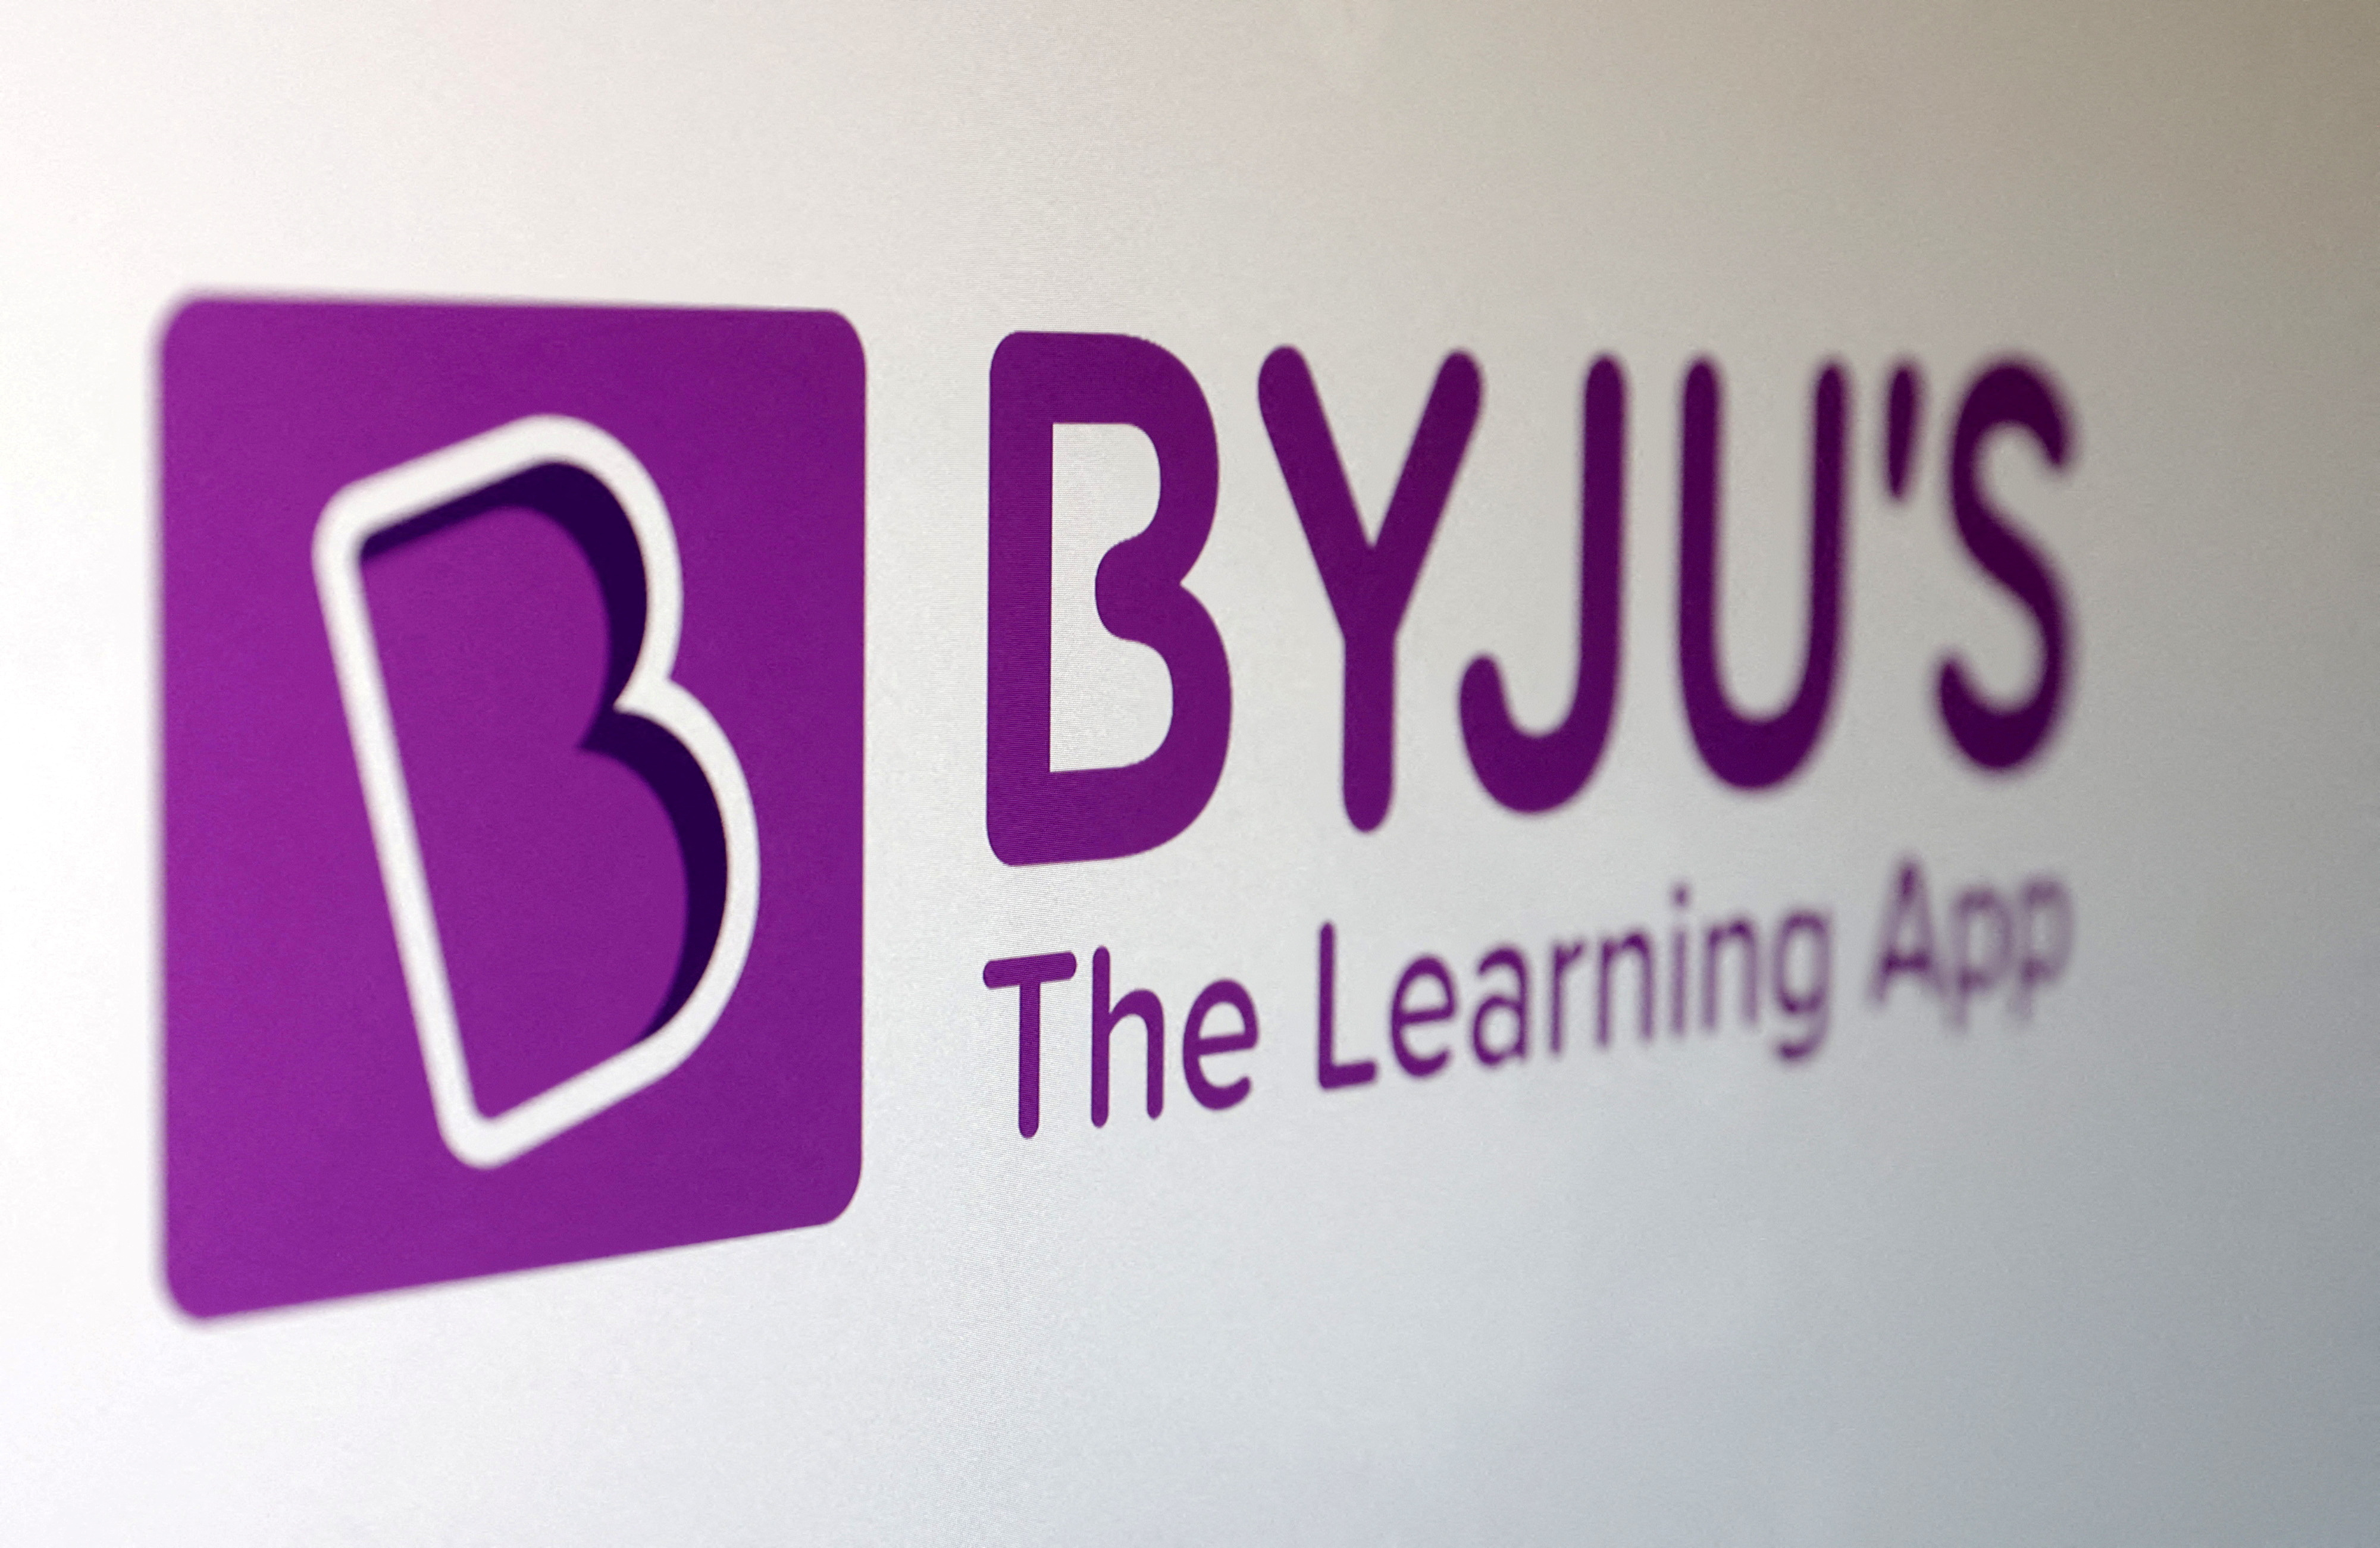 Illustration shows Byju's logo